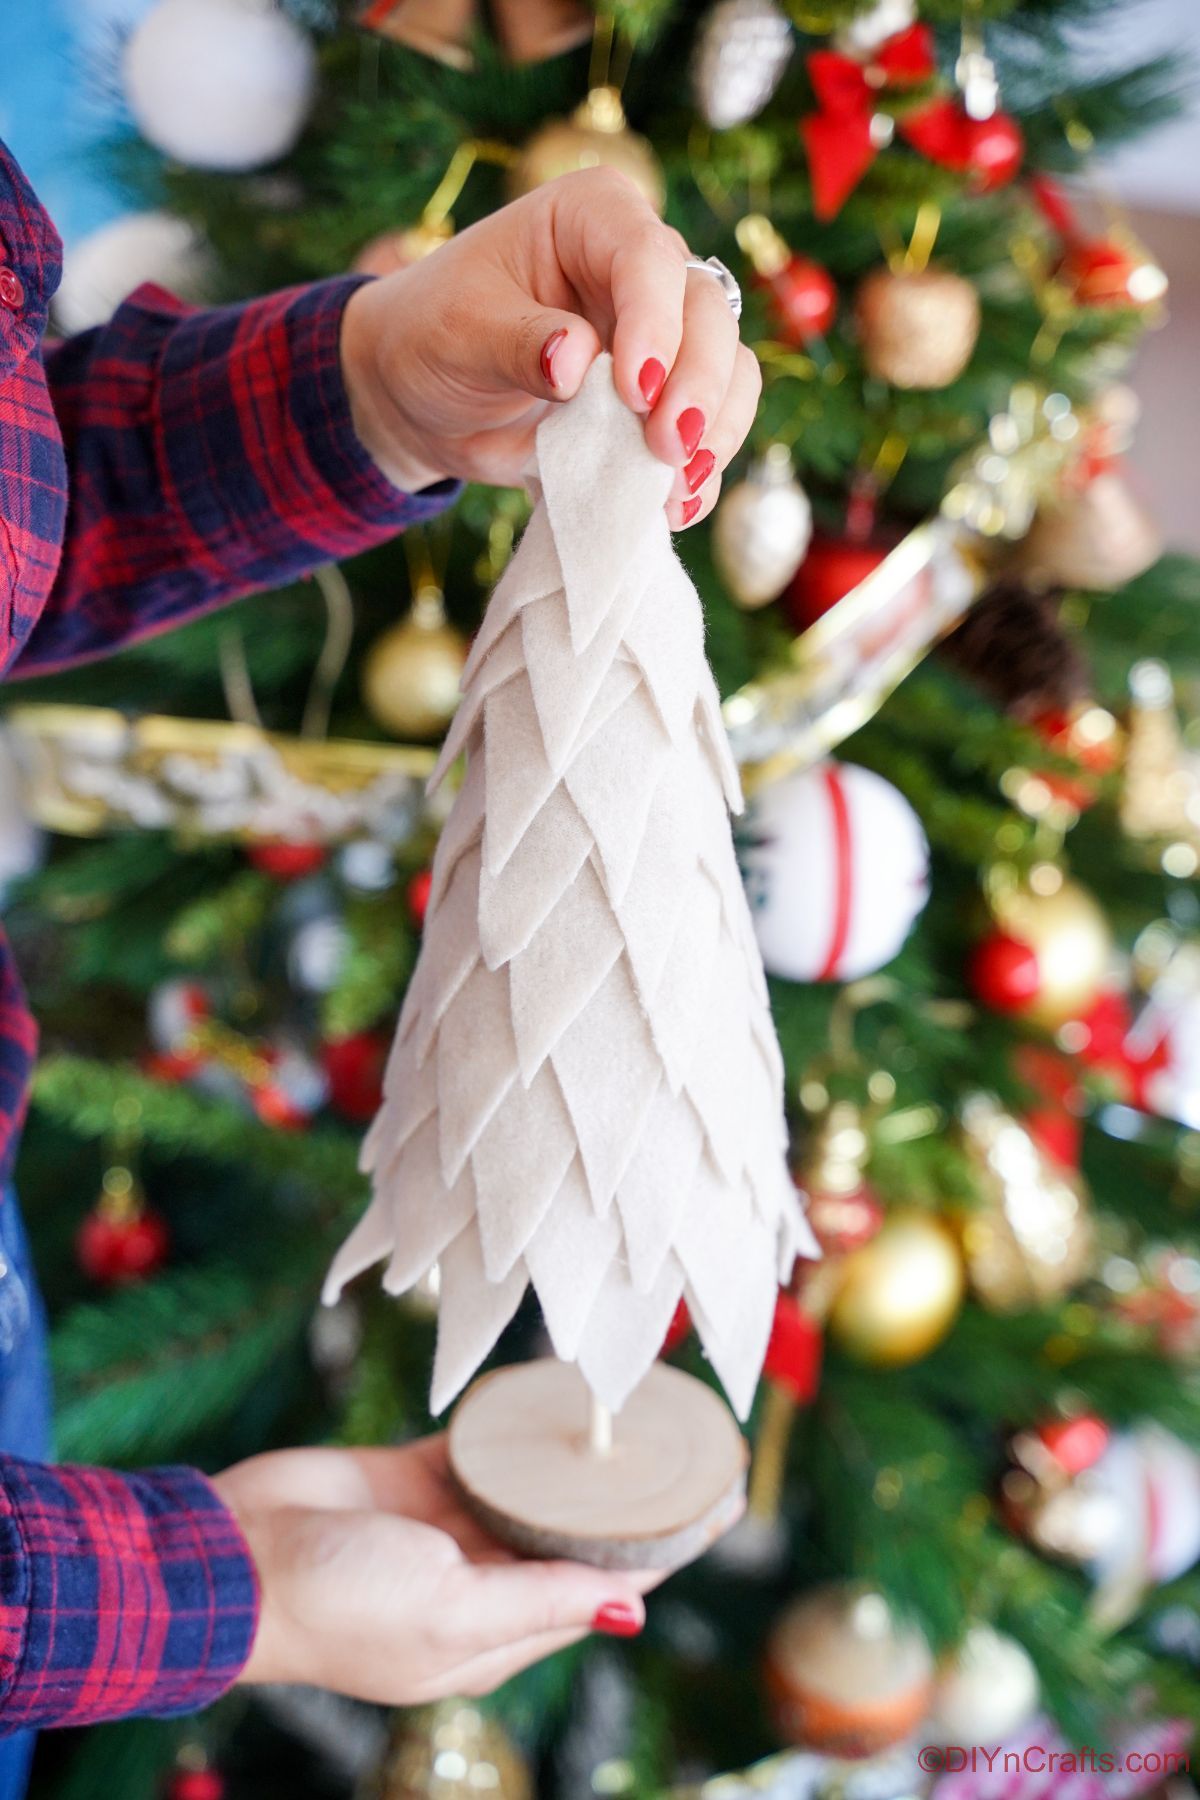 božično drevo iz kremne tkanine, ki poteka pred prazničnim drevesom z okraski